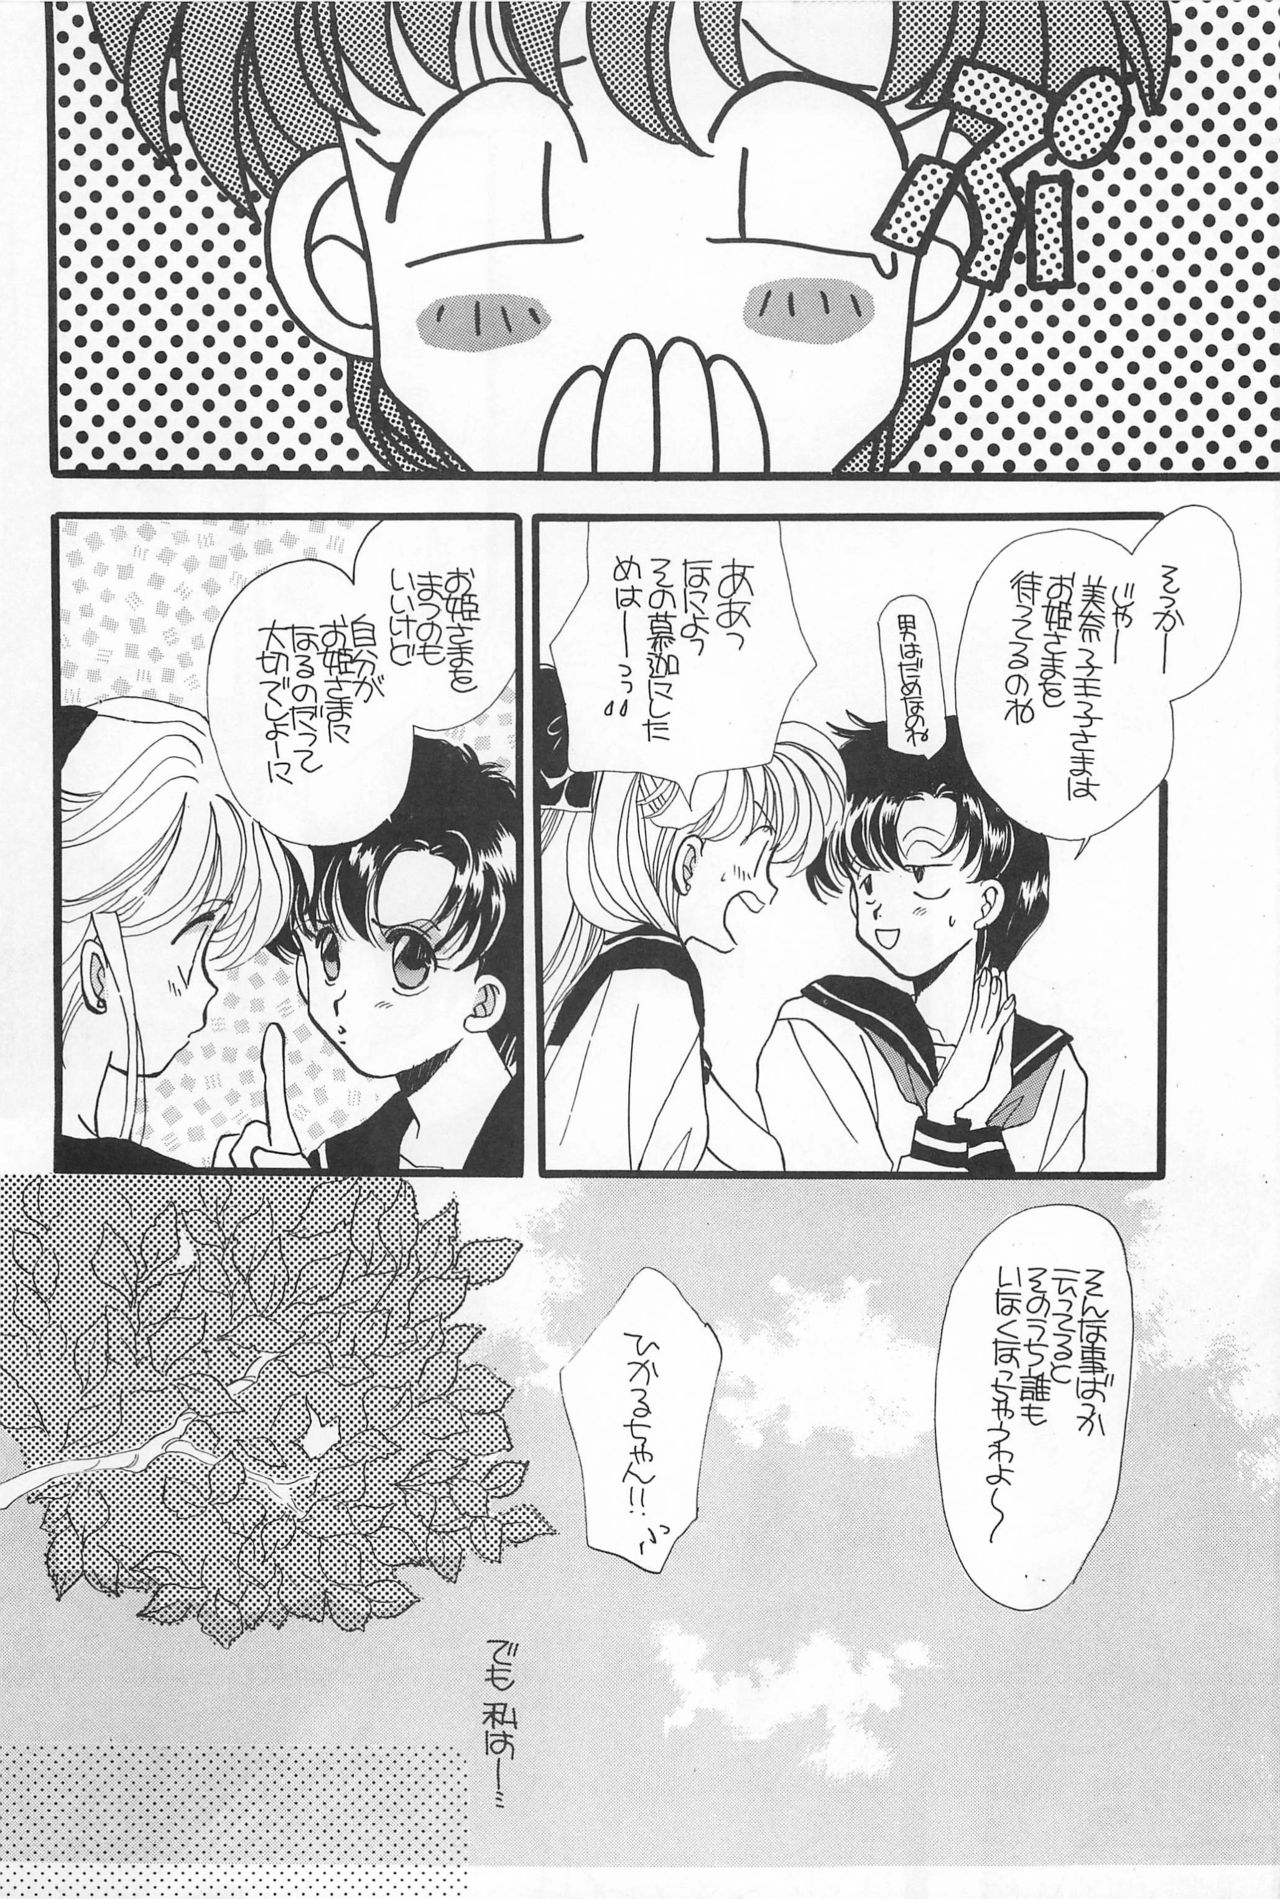 [Hello World (Muttri Moony)] Kaze no You ni Yume no You ni - Sailor Moon Collection (Sailor Moon) 75